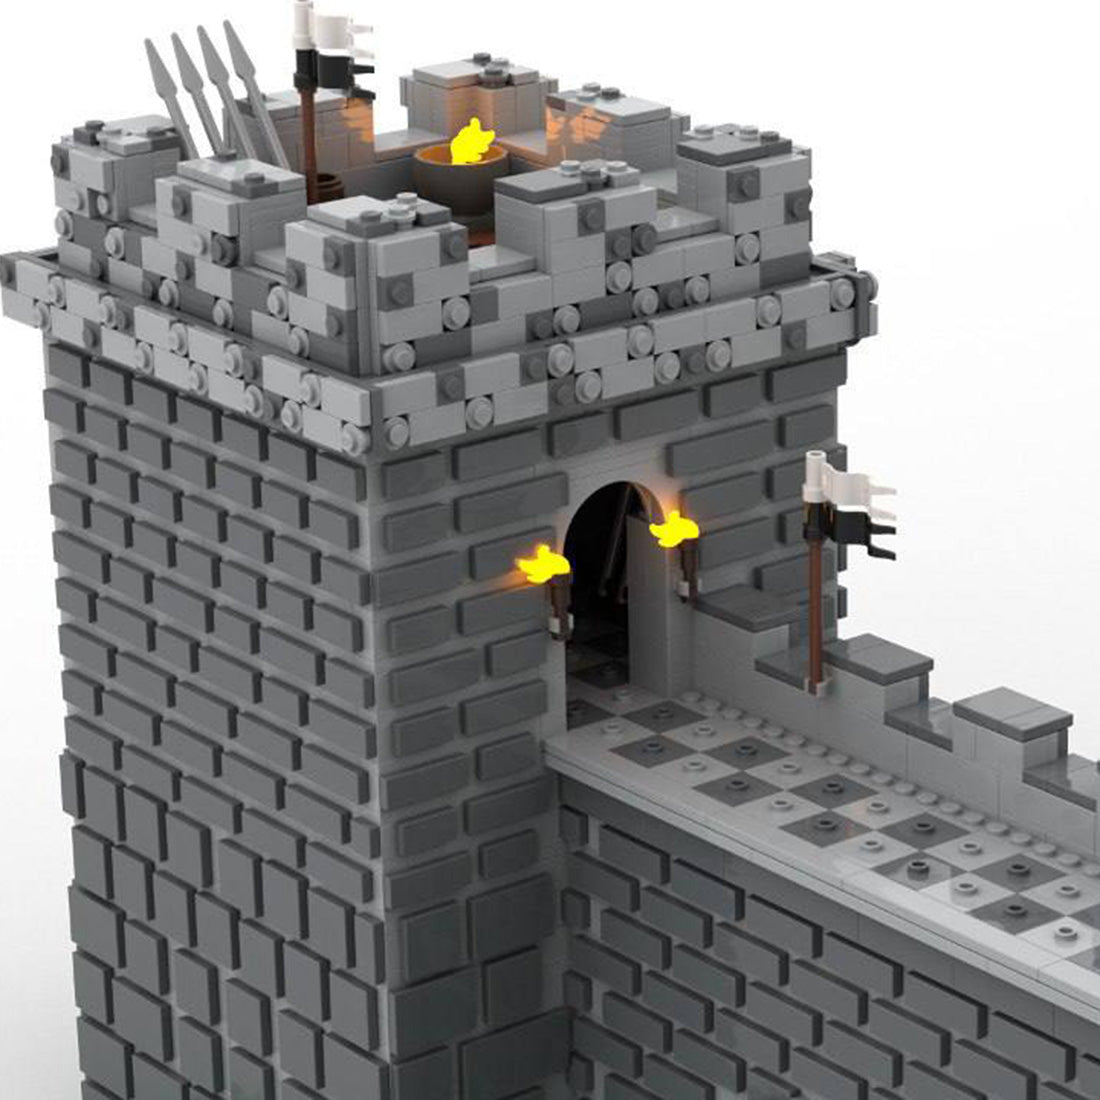 MOC-147993 Medieval Castle Architecture Model